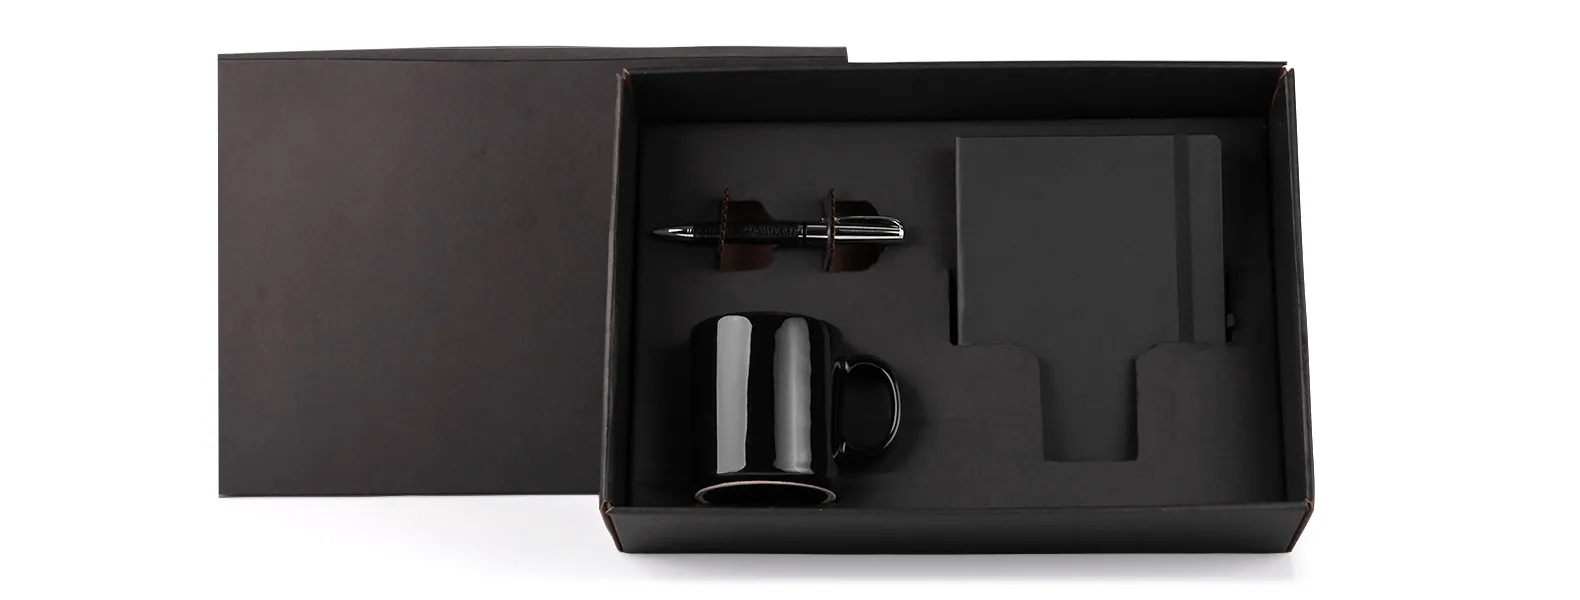 Kit composto por caneca em cerâmica preta; caderno para anotações preto com capa dura e caneta confeccionada em metal cromado brilhante com corpo revestido em material sintético preto texturizado.